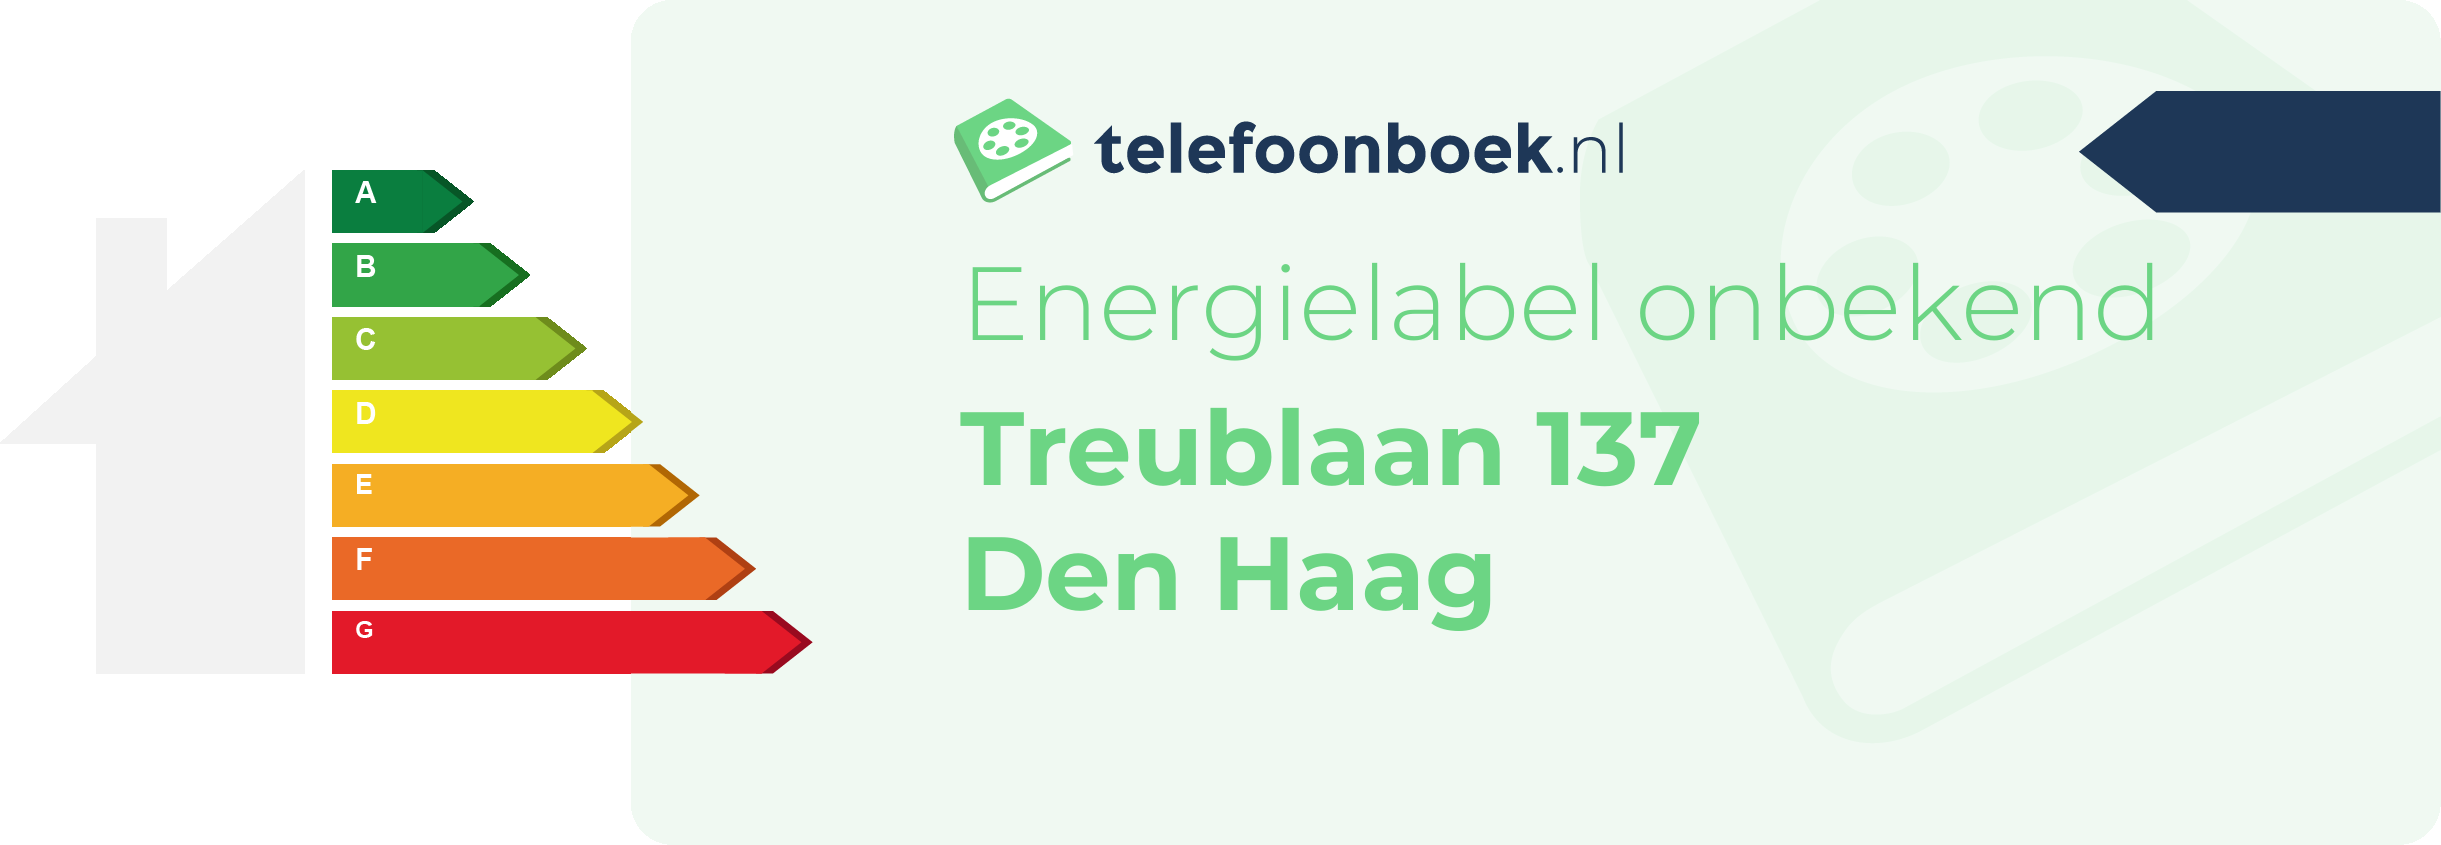 Energielabel Treublaan 137 Den Haag